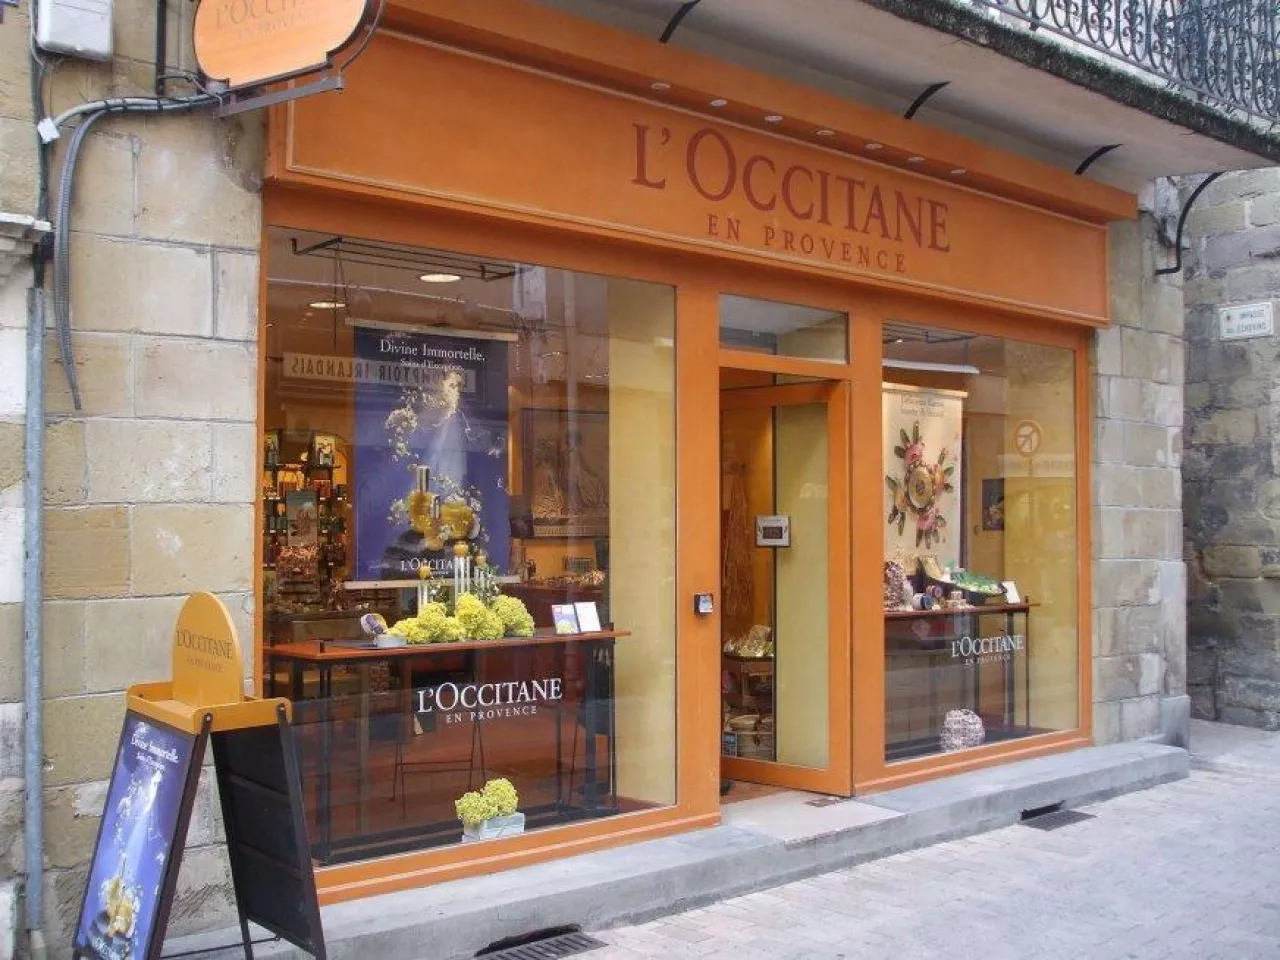 L‘Occitane to francuska marka kosmetyczna, która jest znana z luksusowych produktów do pielęgnacji skóry, ciała i włosów.